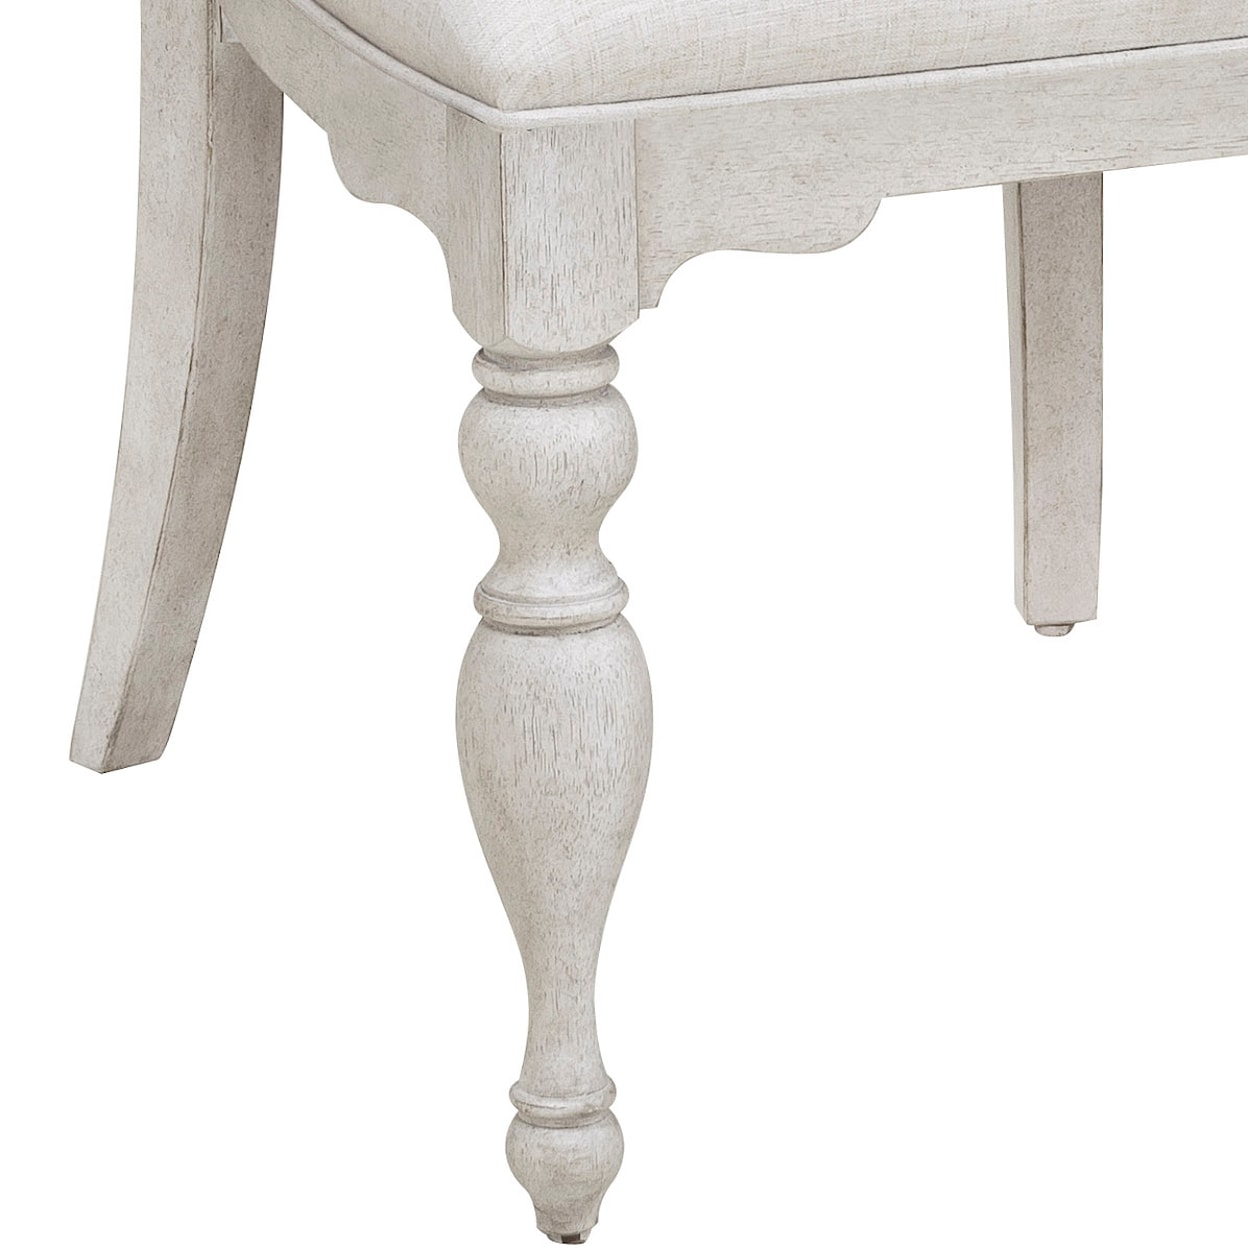 Pulaski Furniture Glendale Estates Upholstered Side Chair